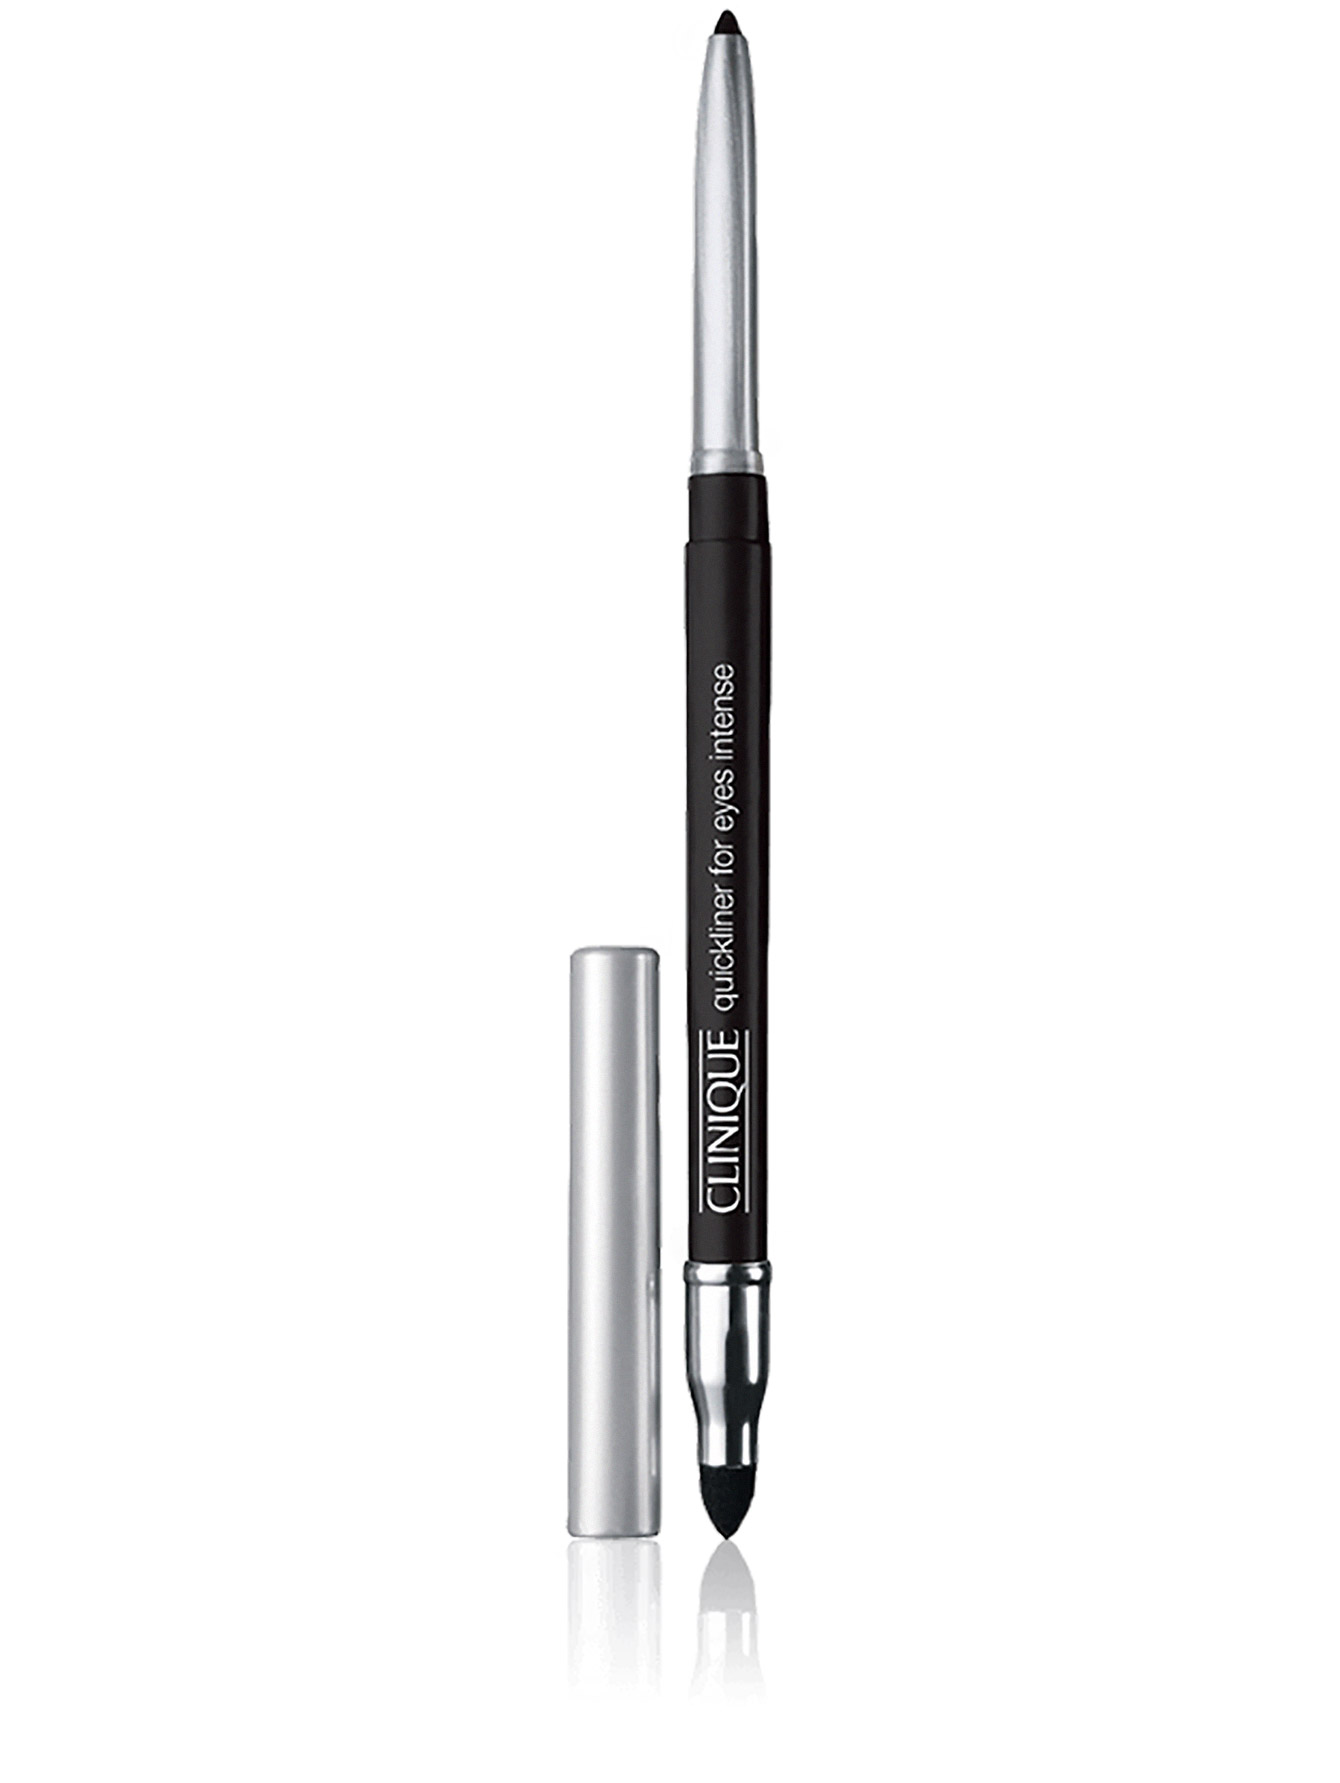  Автоматический карандаш для глаз с растушевкой - Черный, Quickliner - Общий вид